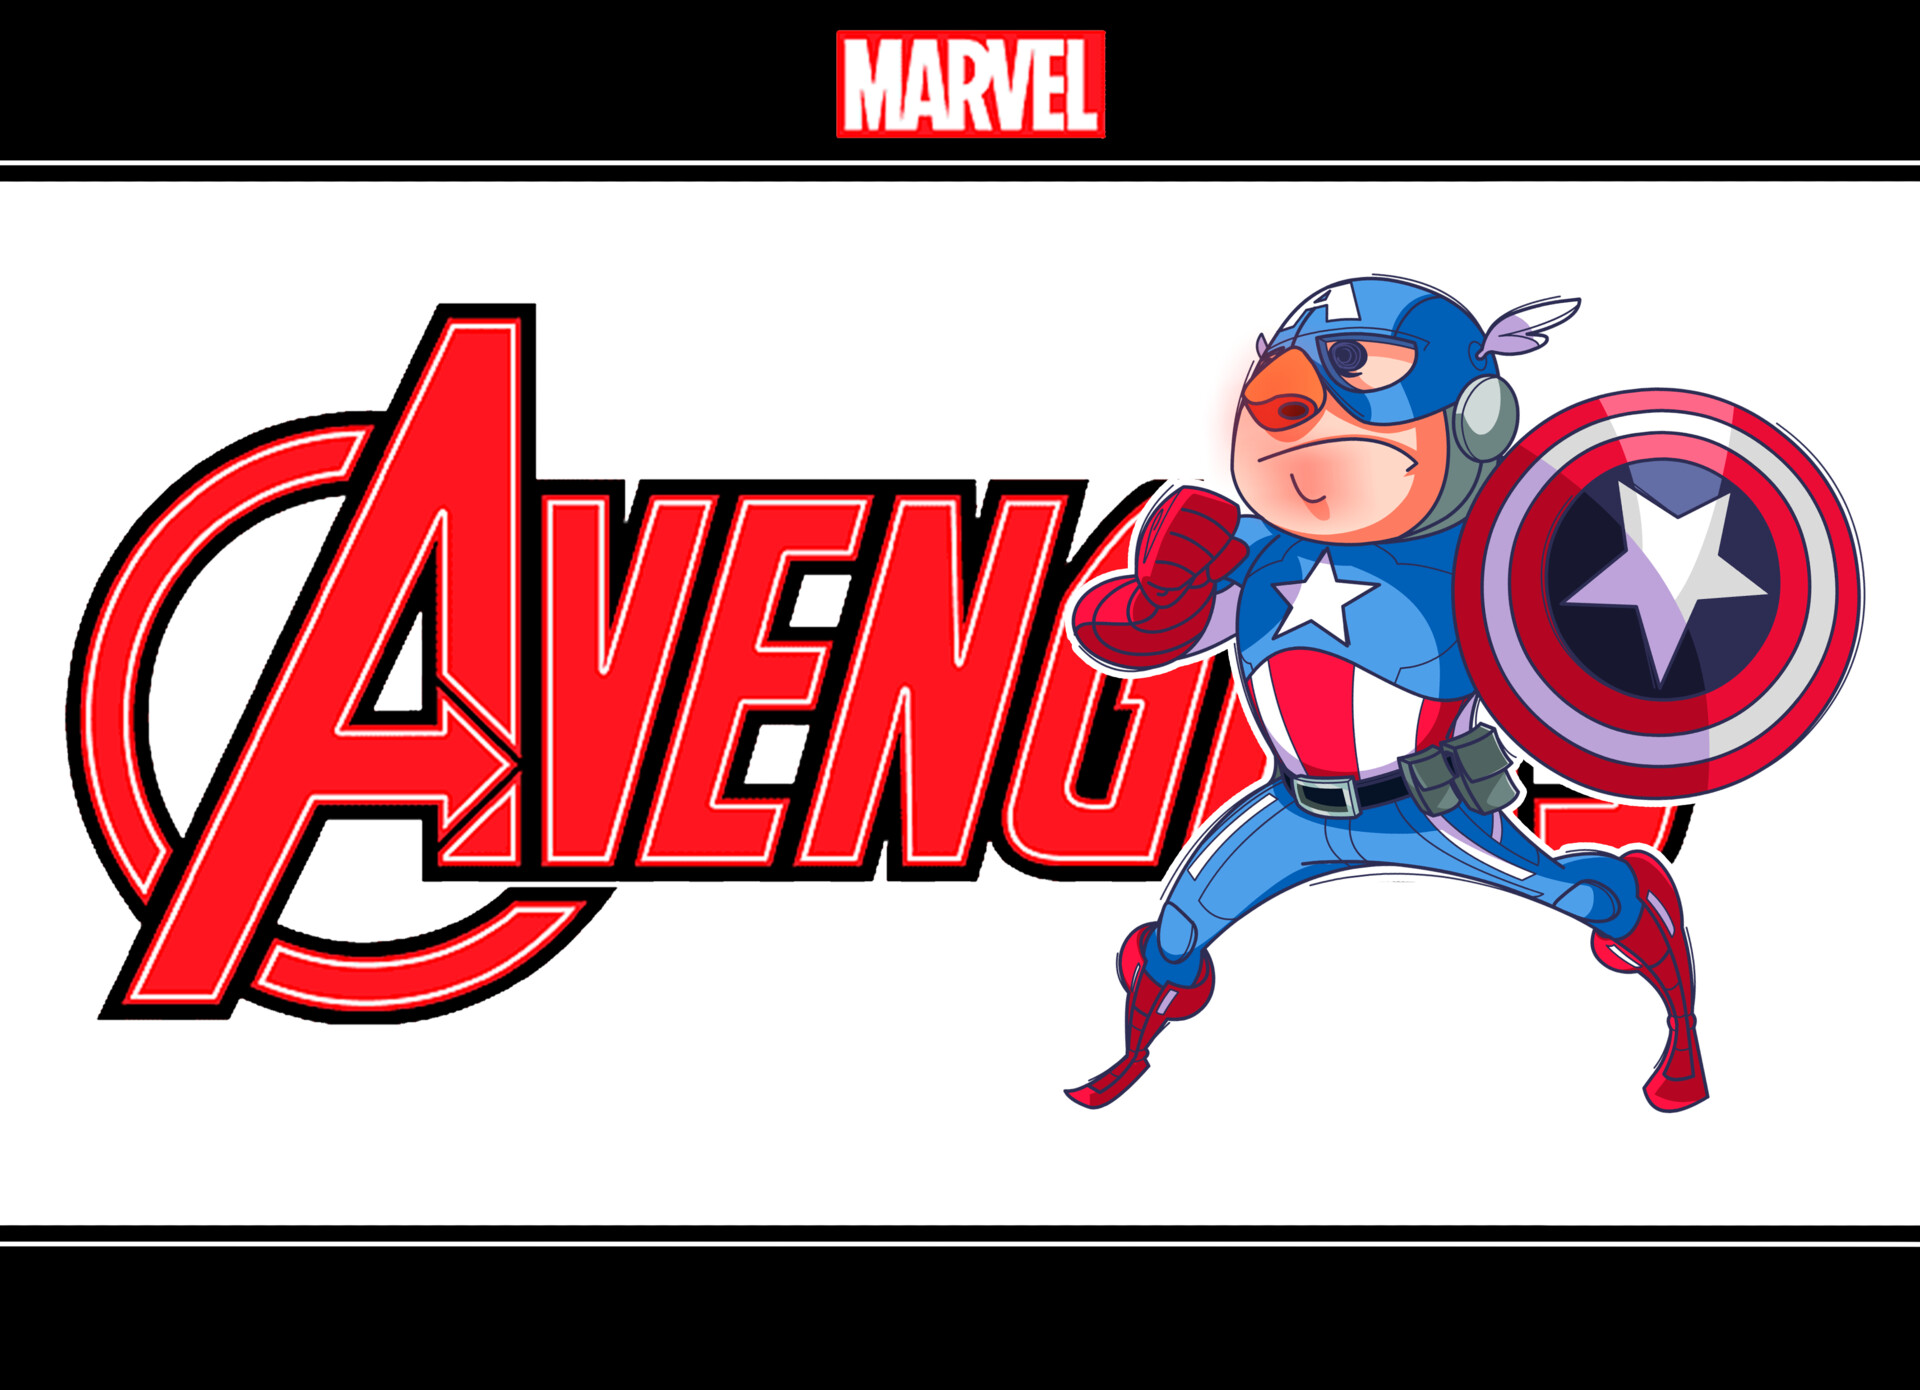 ArtStation - Captain America Avenger